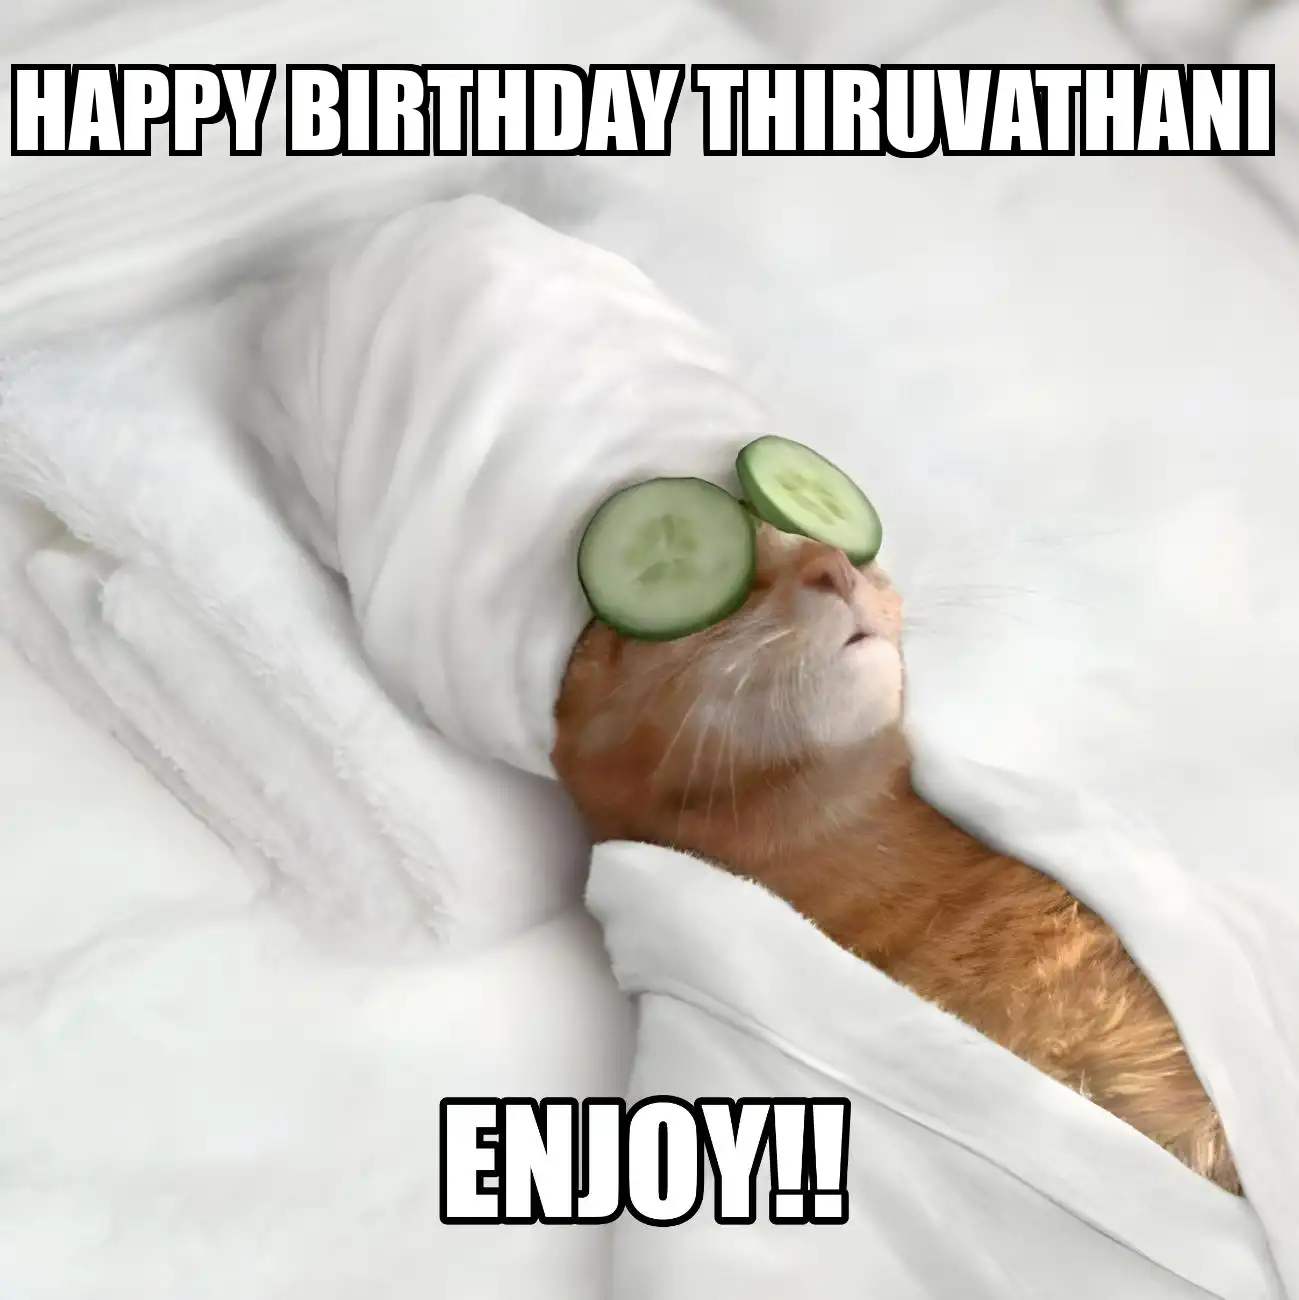 Happy Birthday Thiruvathani Enjoy Cat Meme